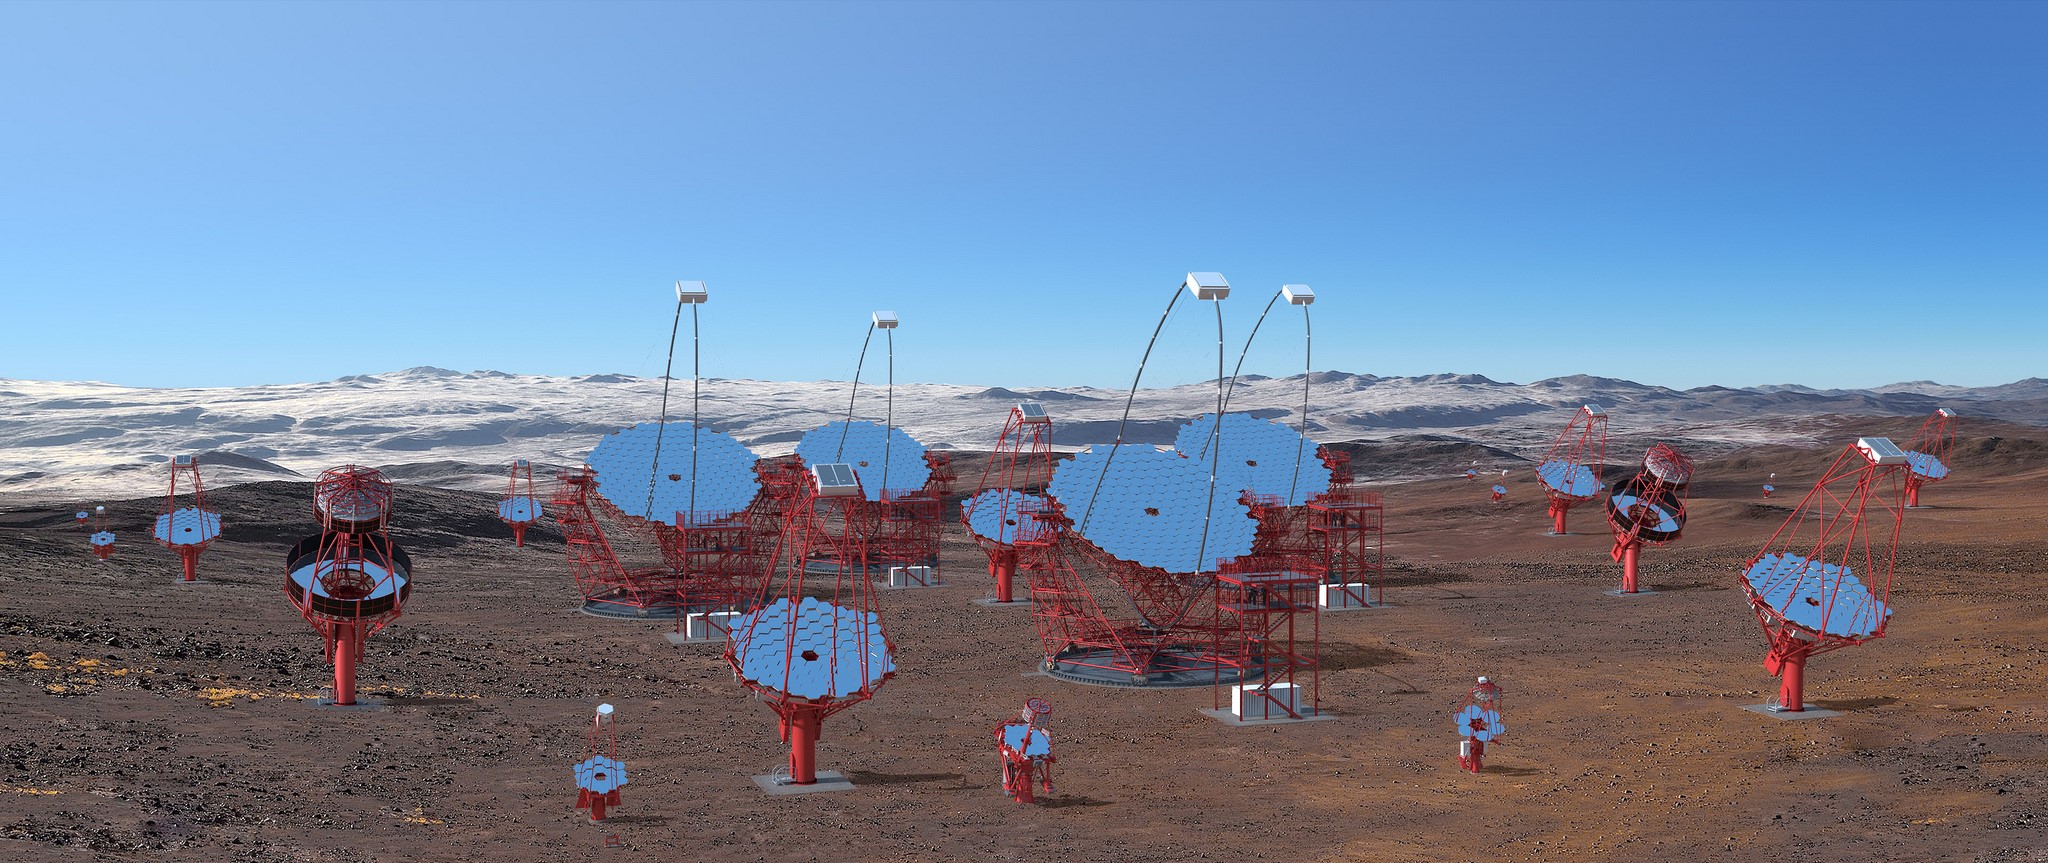 télescopes dans l'Atacama